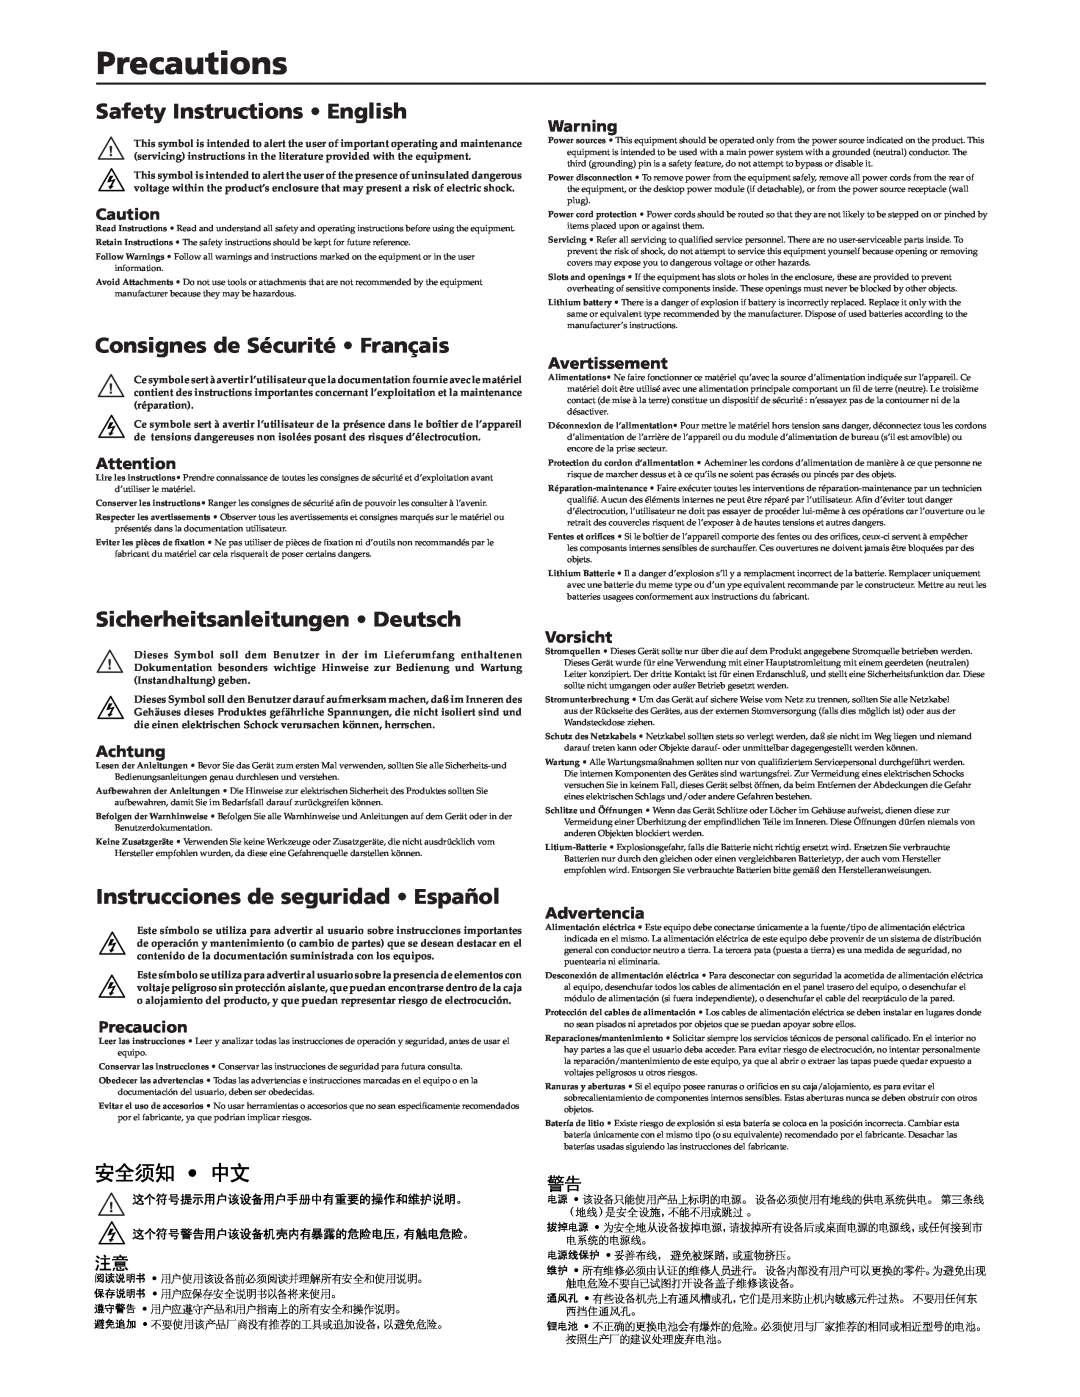 Extron electronic MAAP manual Precautions, Safety Instructions English, Consignes de Sécurité Français, 安全须知 中文, Achtung 